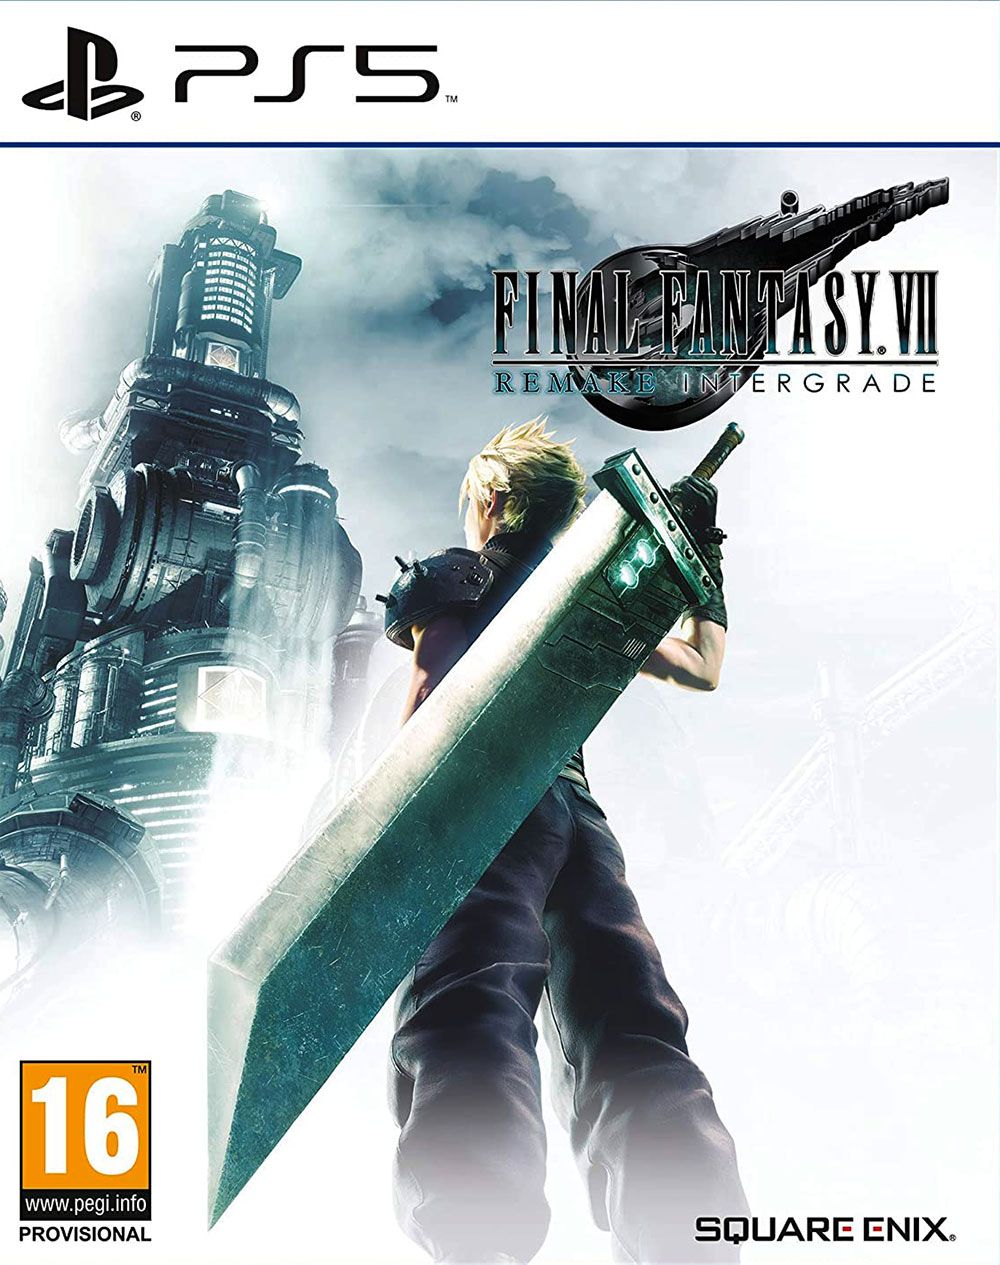 Final Fantasy VII: Remake - Intergrade (PS5) | PlayStation 5